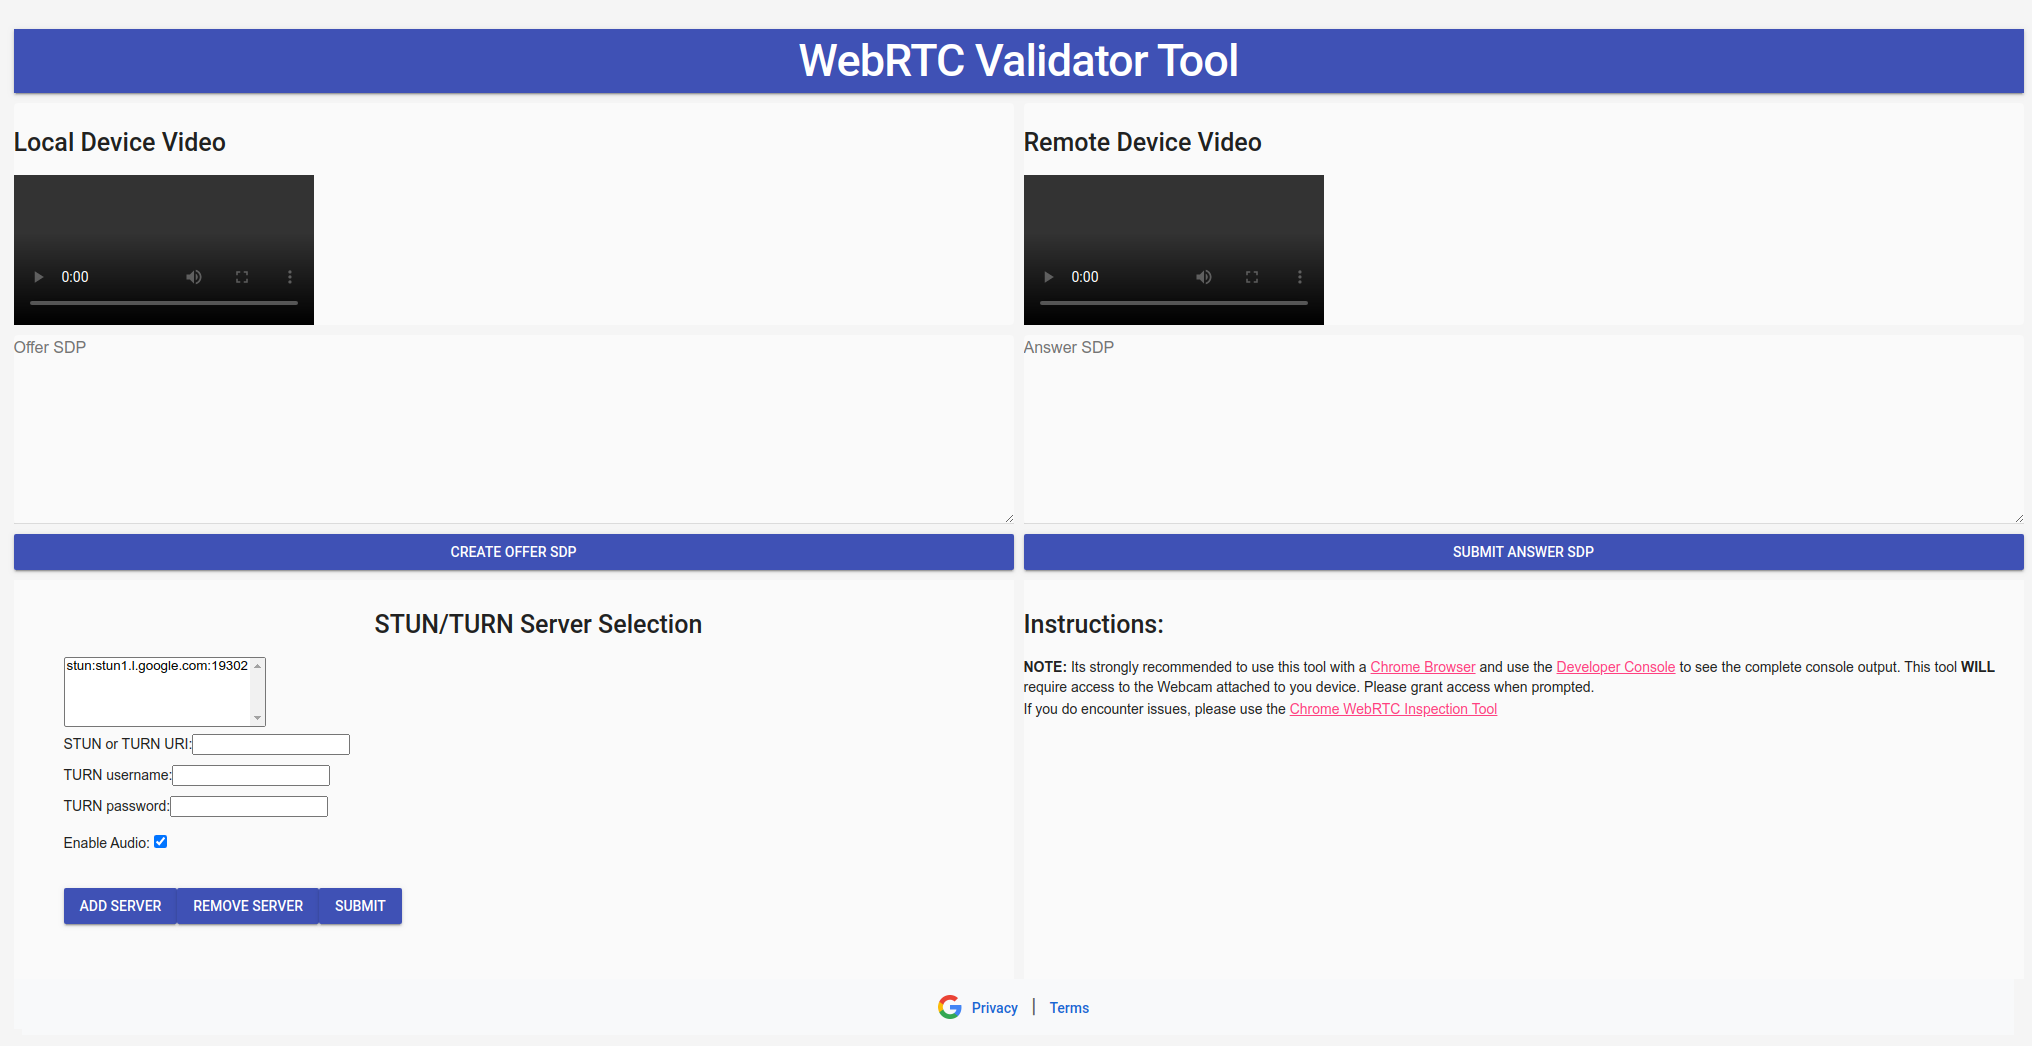 Imagem da visão geral da ferramenta de validador WebRTC.